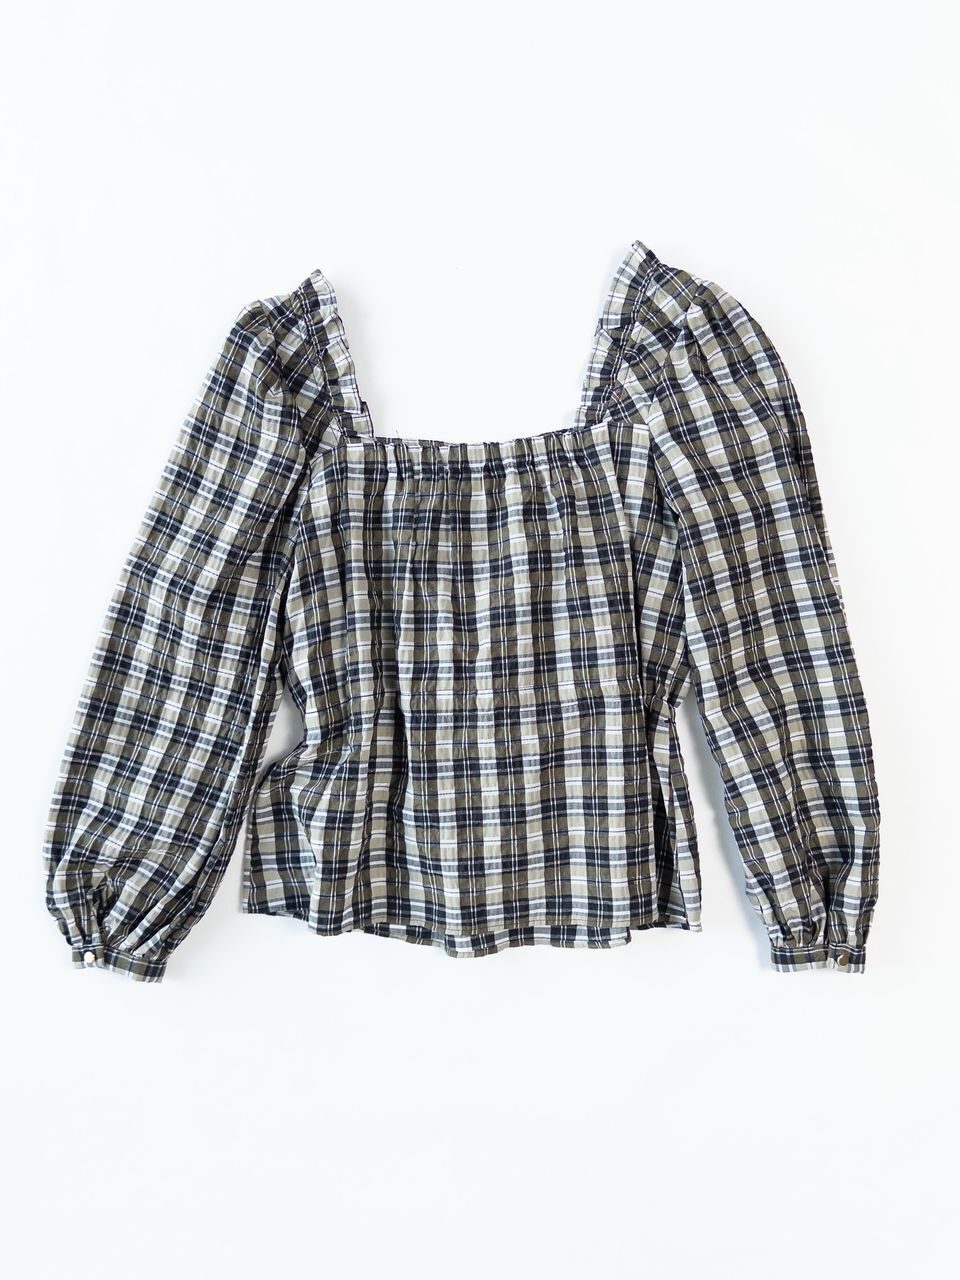 Блуза легкая на подкладке с утягивающим шнурком в талии размер EUR 40 (rus 46) C&A